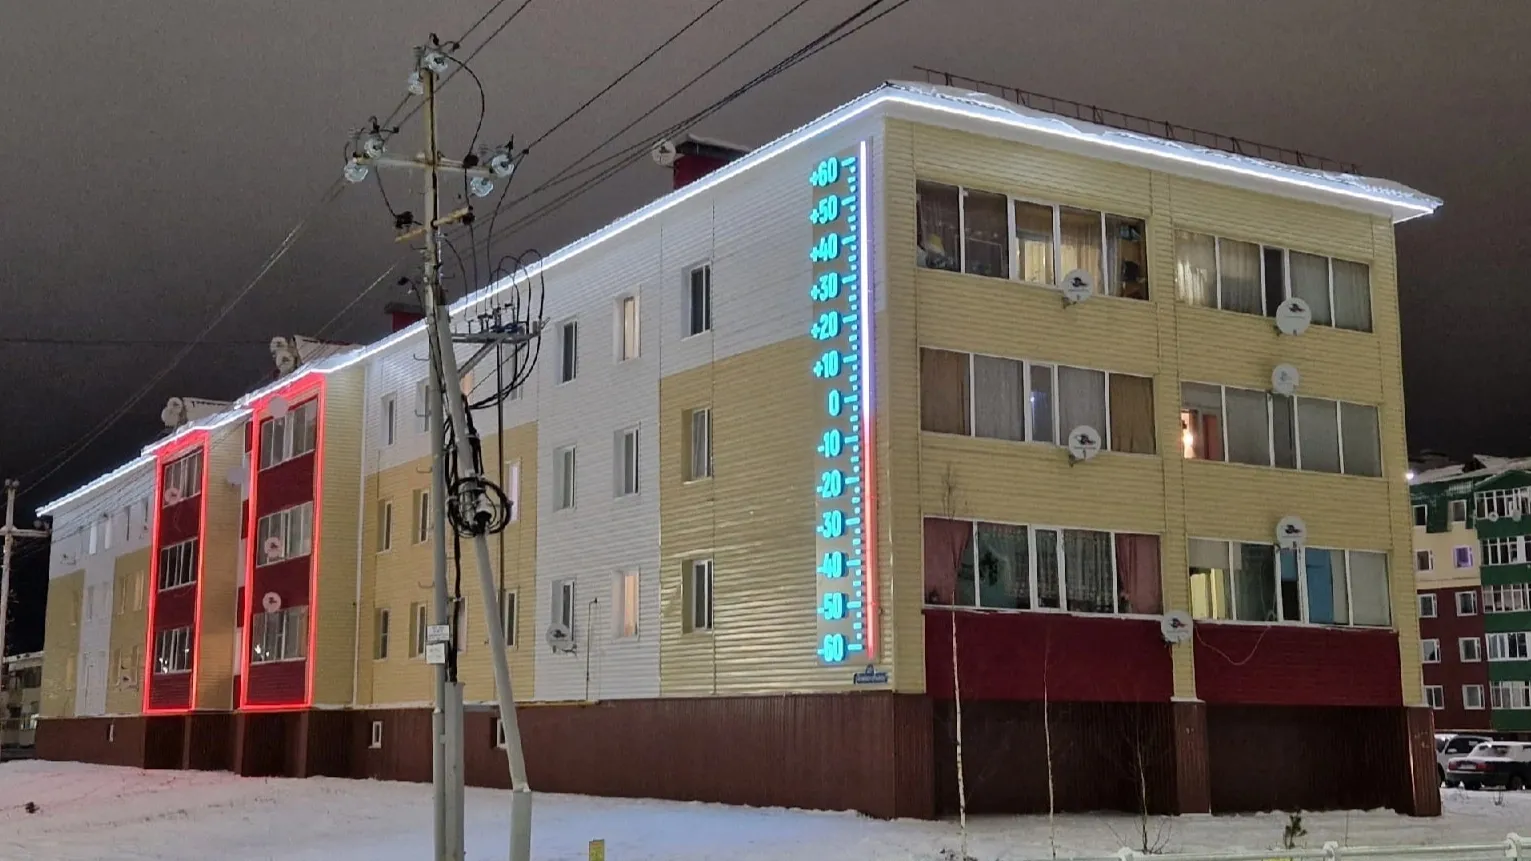 Светодиодная конструкция украшает фасад дома в Уренгое. Фото: vk.com/ovyakimov